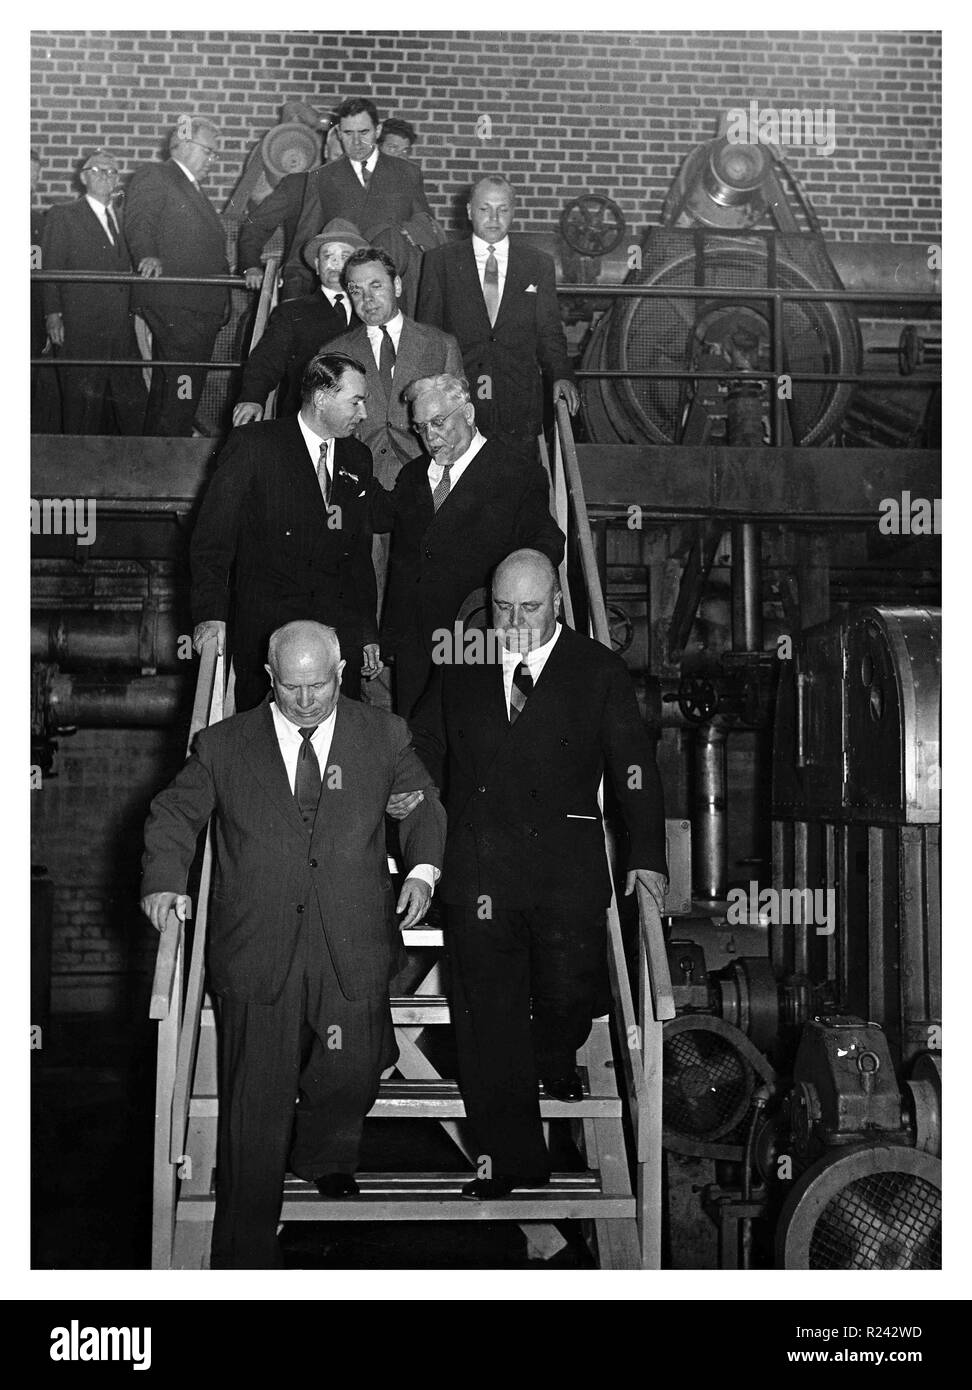 Juuso Walden et Nikita Khrouchtchev en Kaipola papiers. Juuso Walden (1907 - 1972) était un leader industriel et entrepreneur, 1960 Banque D'Images